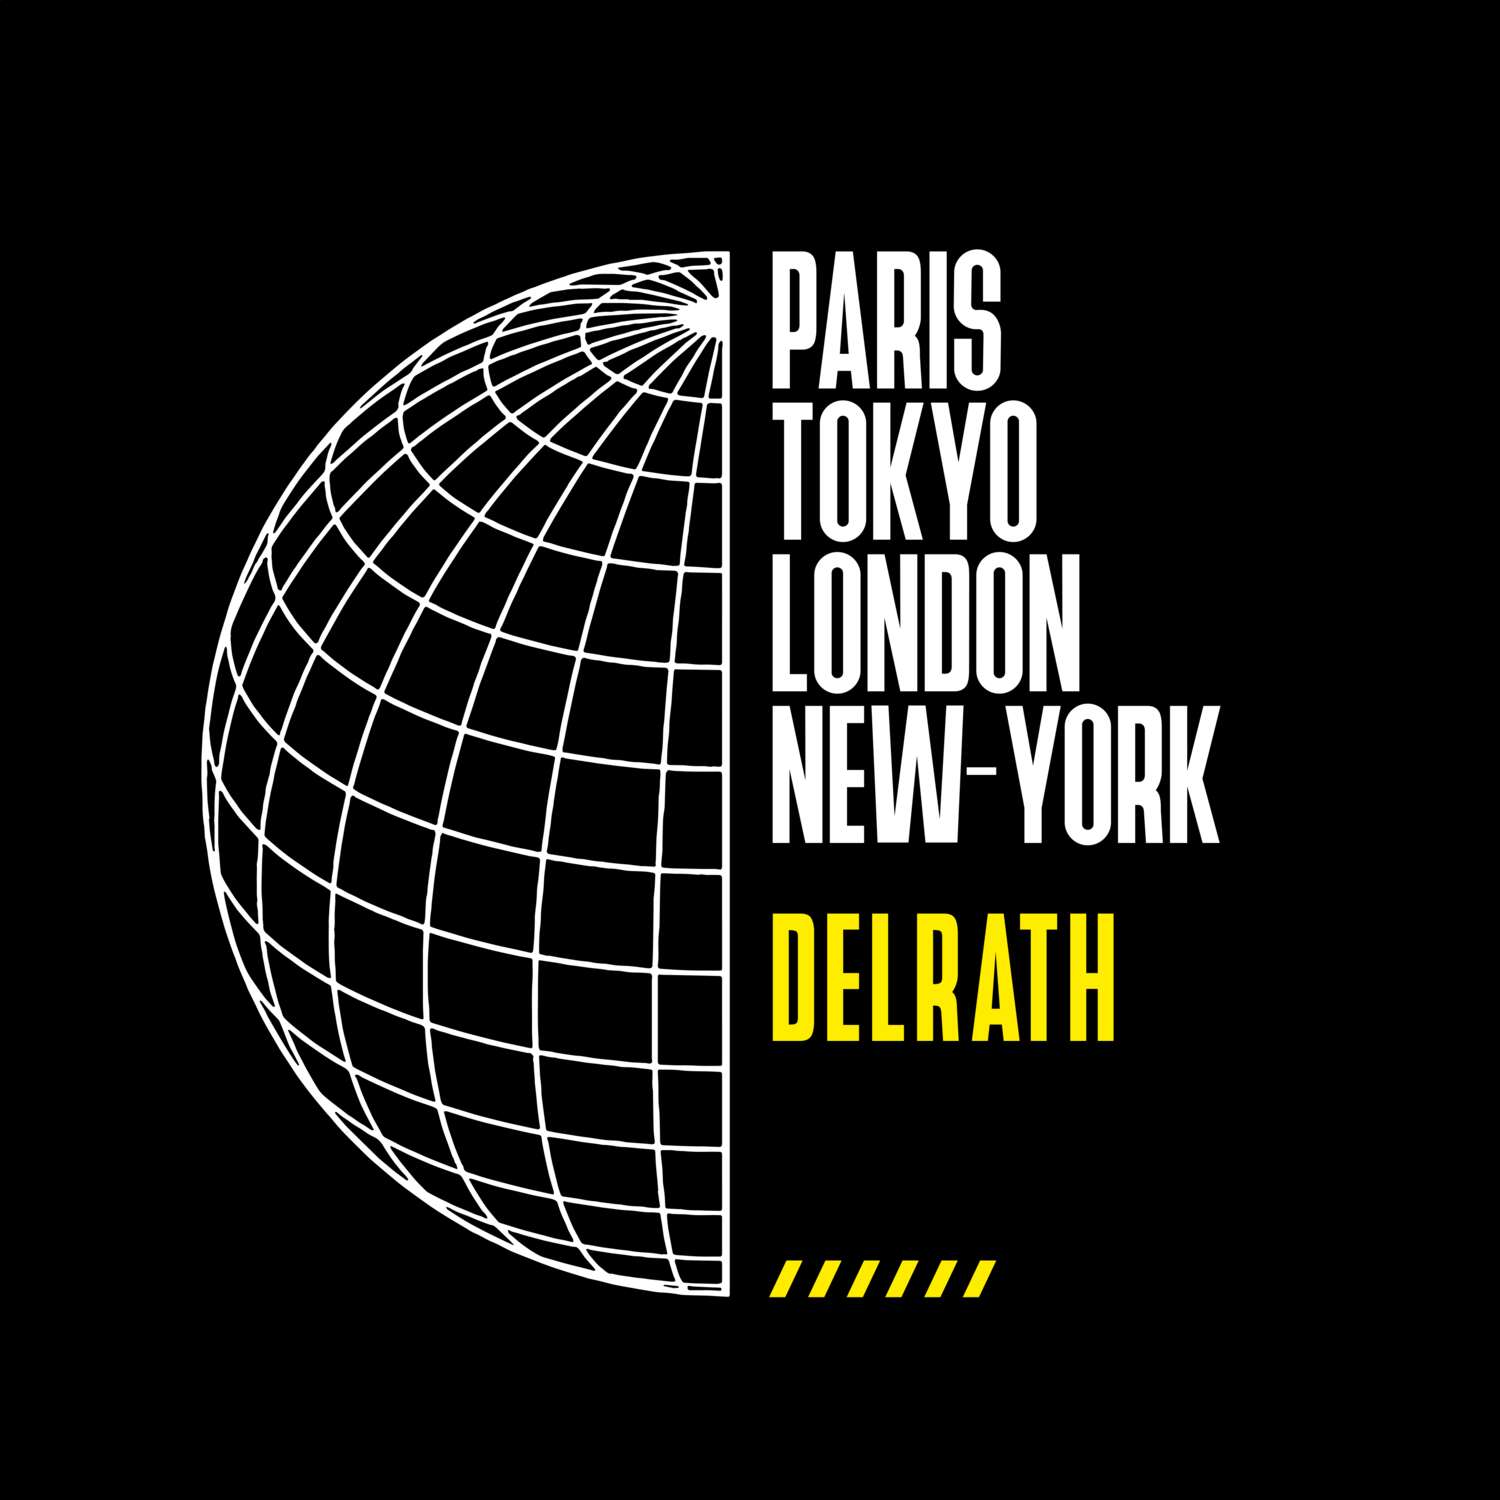 Delrath T-Shirt »Paris Tokyo London«